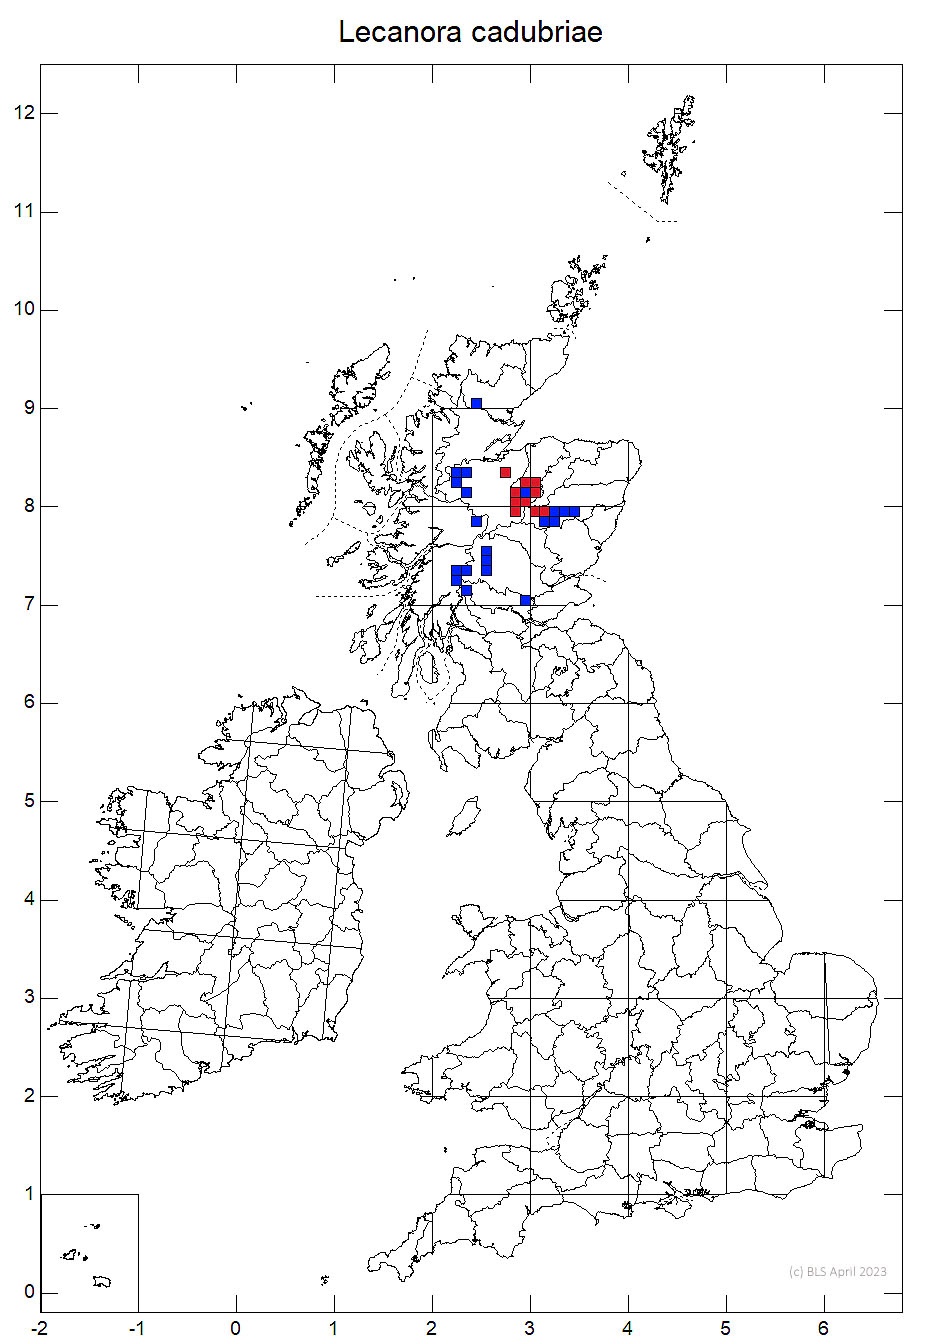 Lecanora cadubriae 10km sq distribution map